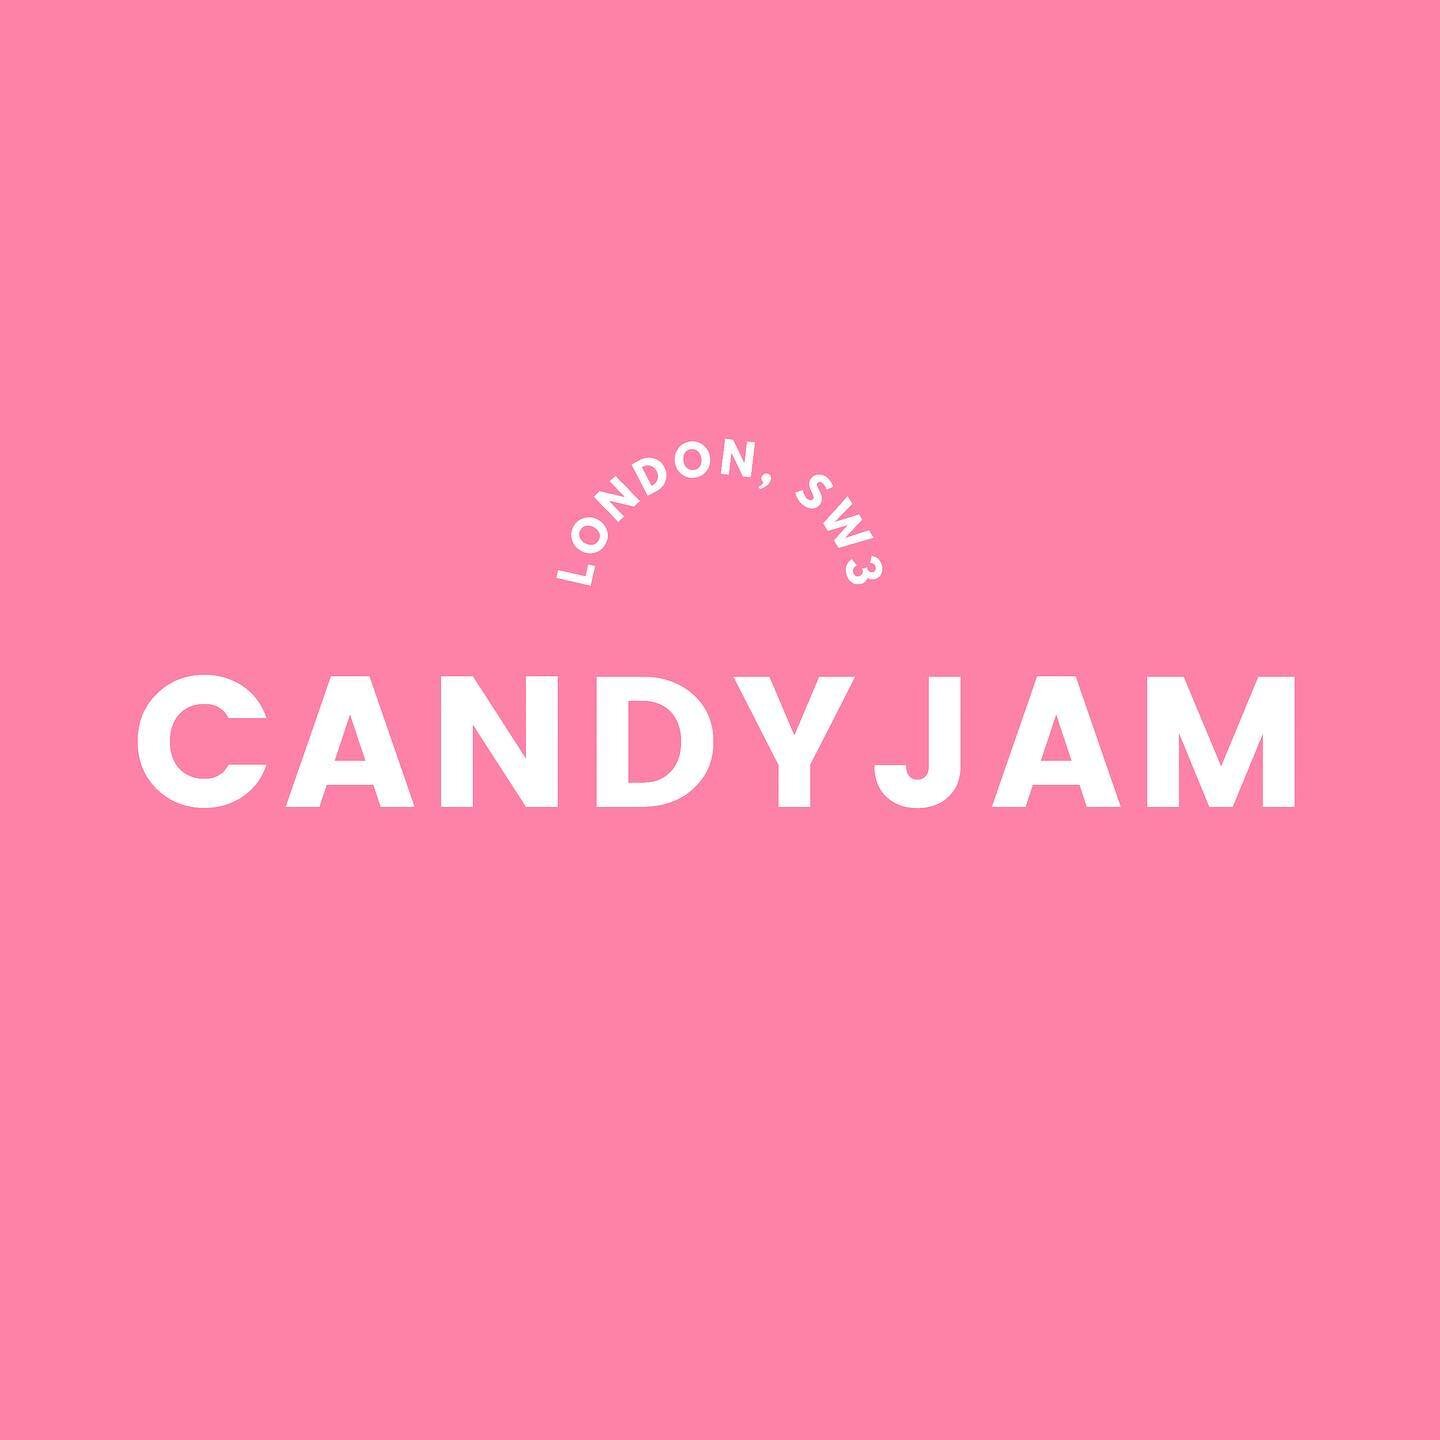 CANDYJAM LONDON, SW3. #candyjamlondon